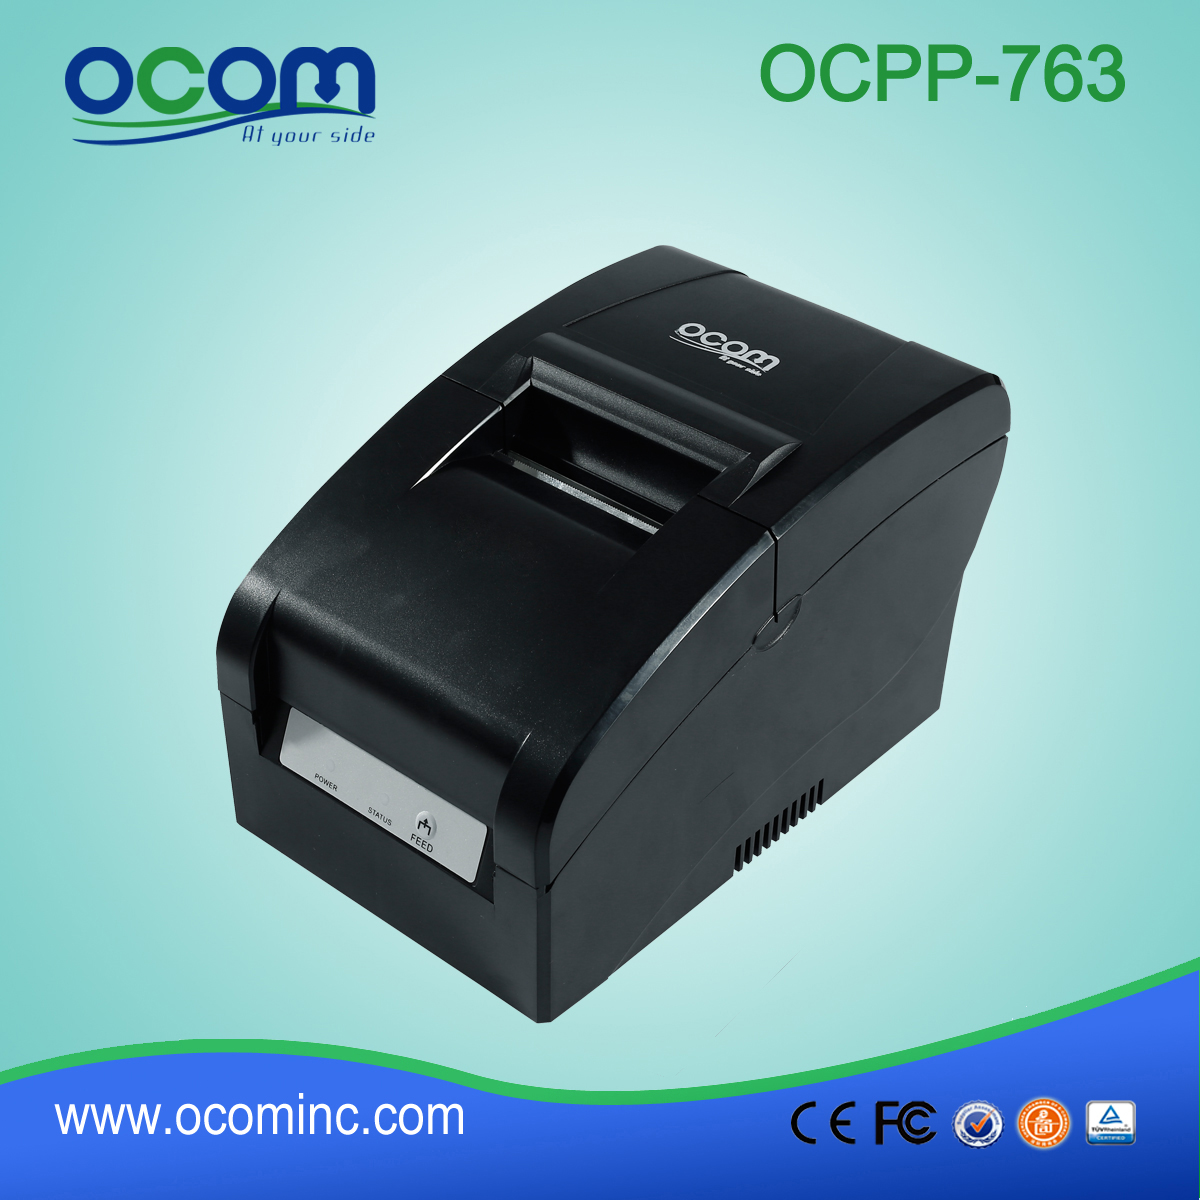 OCPP-763 Mini Impact Dot Matrix-printer met 76 mm breed papierformaat voor kassa